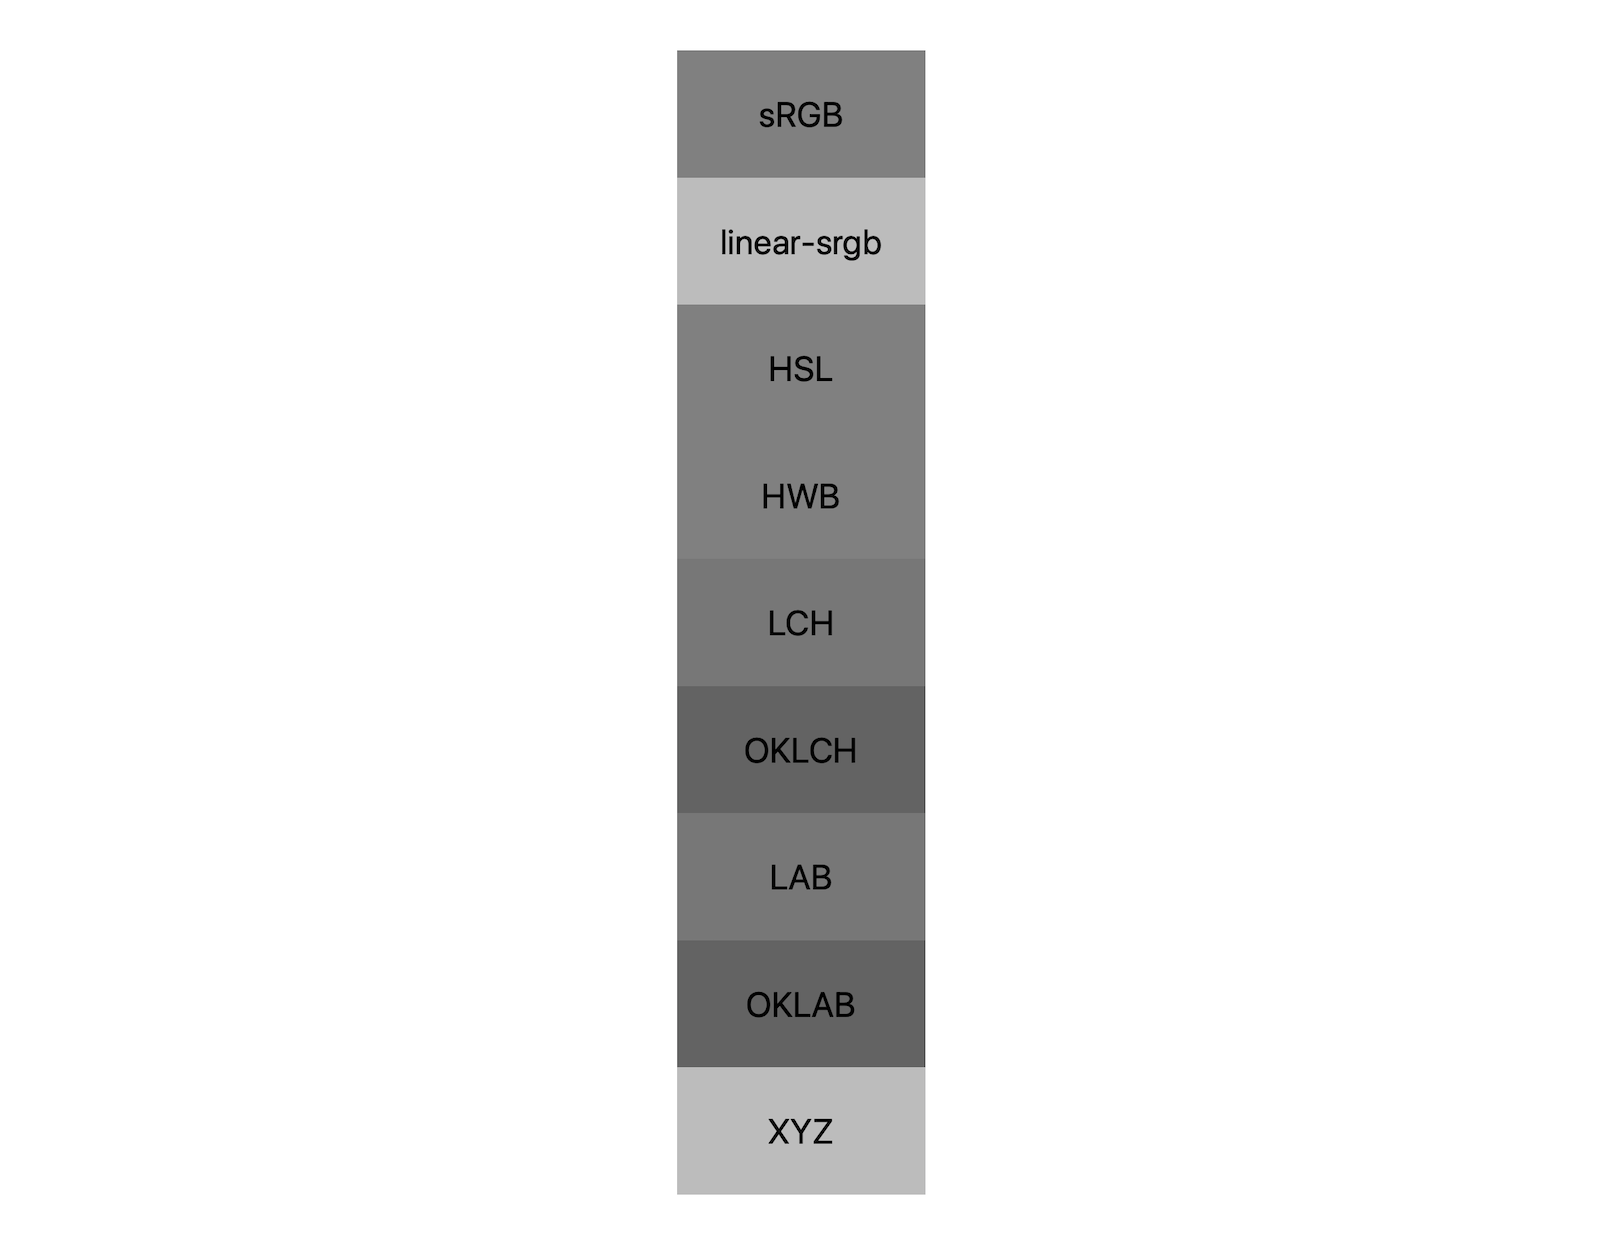 7 Farbbereiche (srgb, linear-srgb, lch, oklch, Lab, oklab, xyz) zeigen jeweils die Ergebnisse einer Kombination von Schwarz und Weiß. Es werden etwa fünf verschiedene Schattierungen gezeigt, was zeigt, dass sich jeder Farbraum in Grautönen unterschiedlich mischen kann.